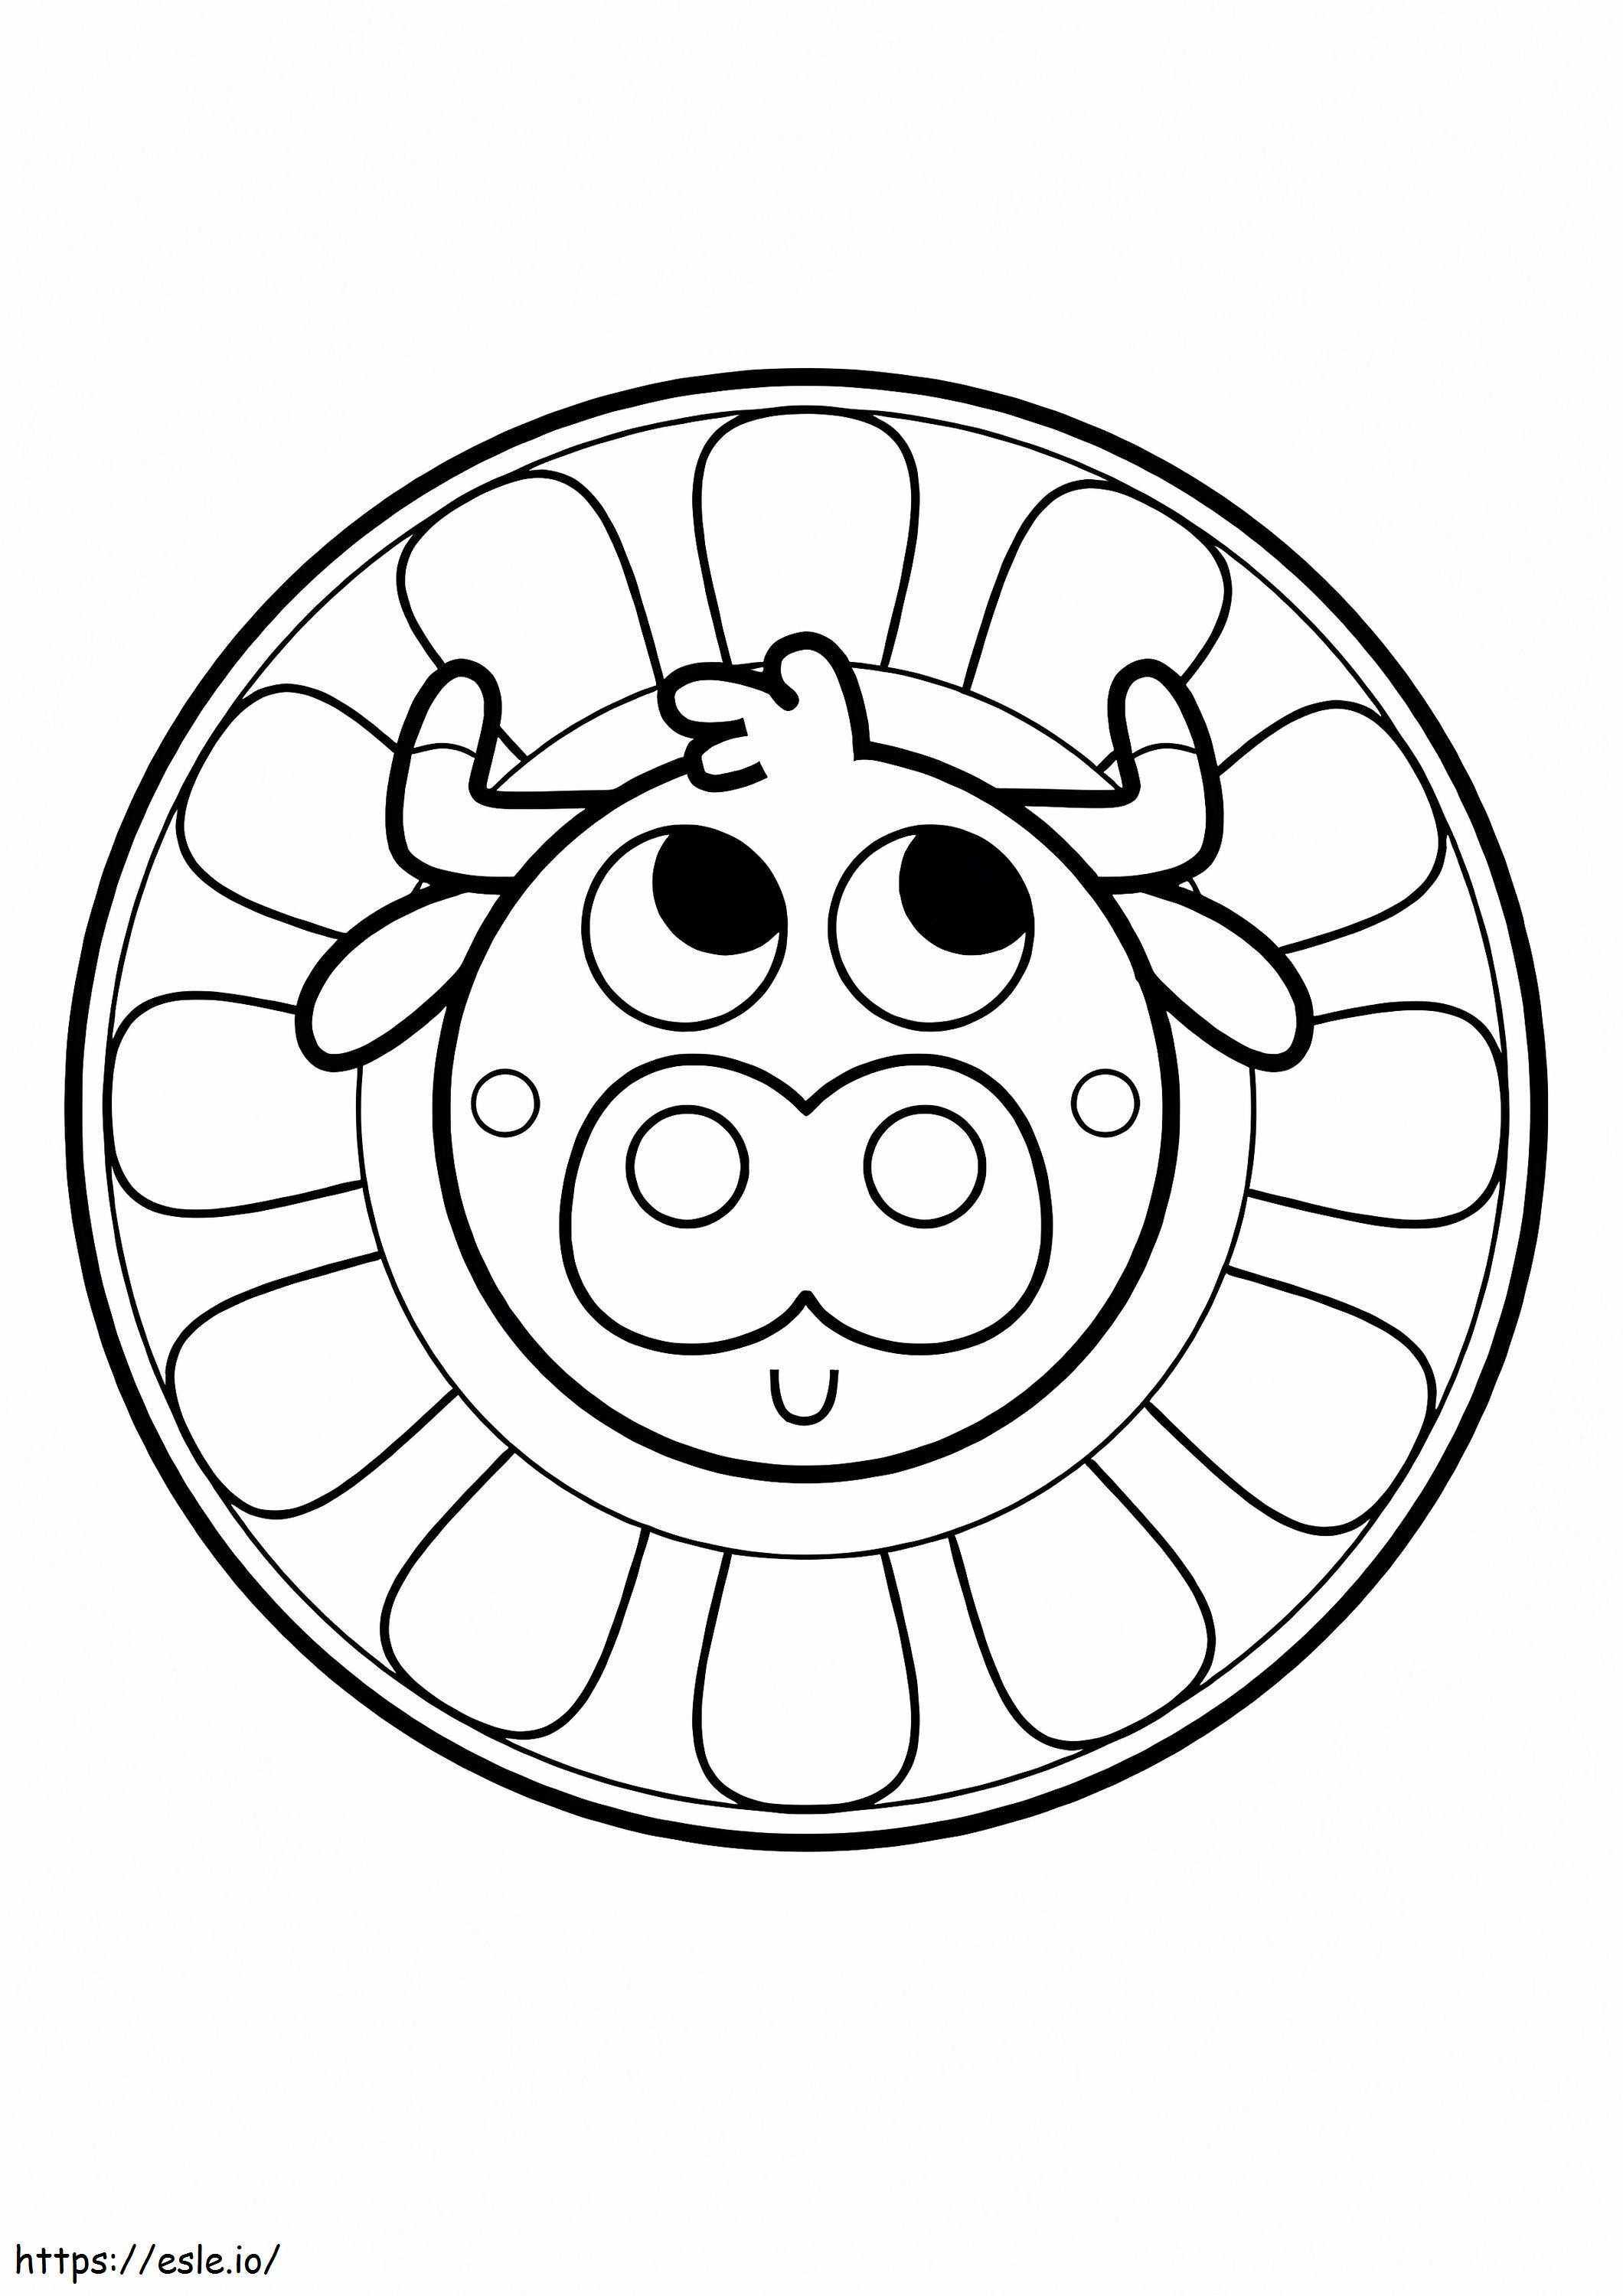 Kuh-Mandala für Kinder ausmalbilder